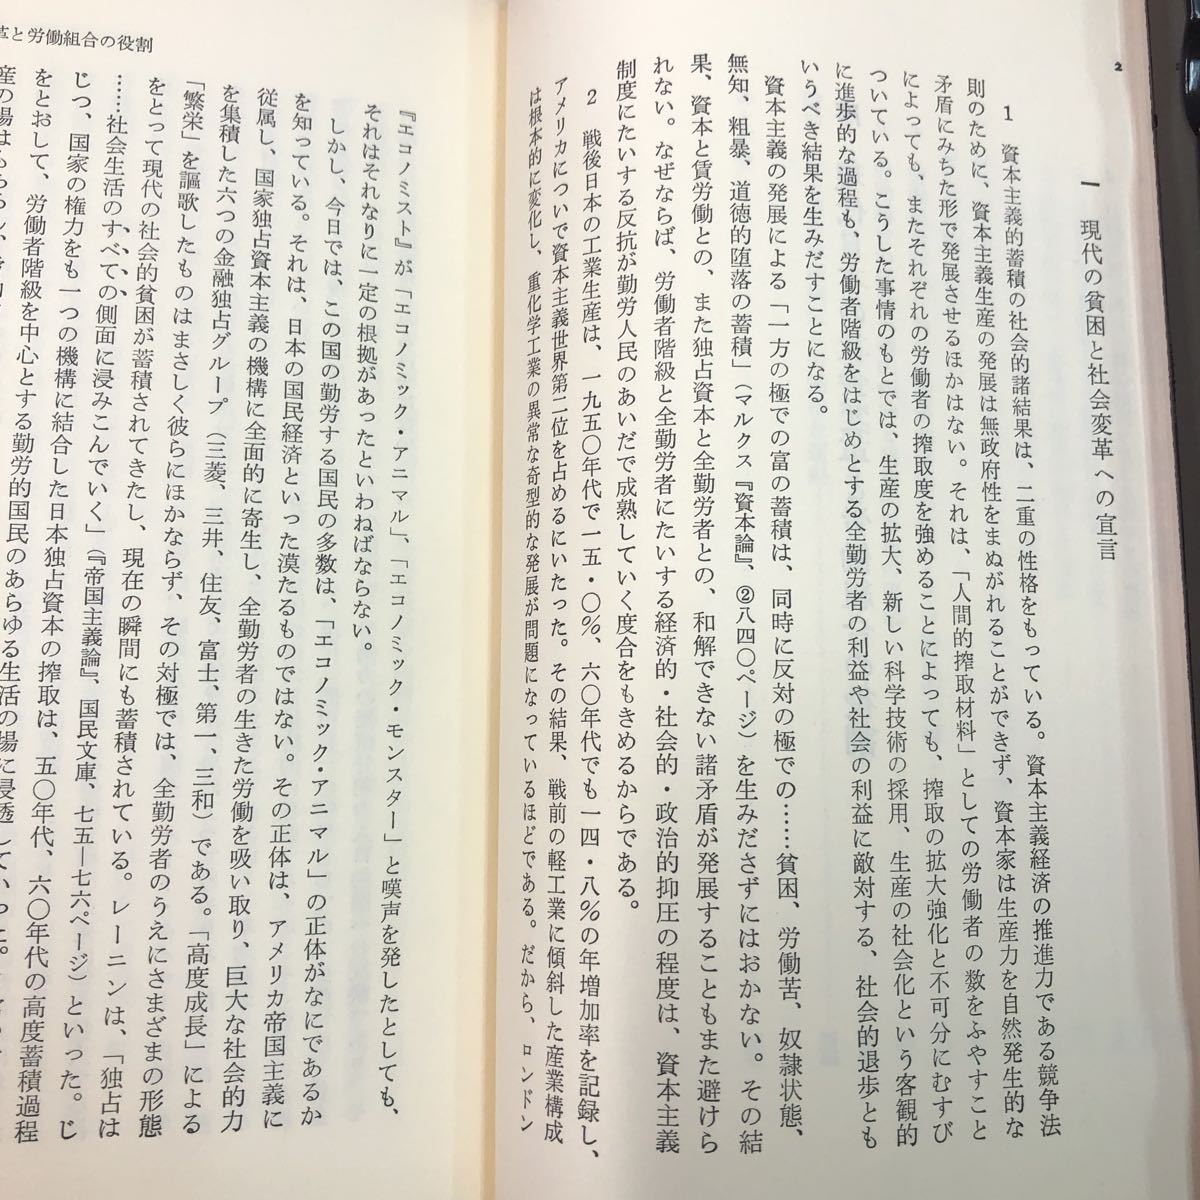 S6h-092 社会変革と労働組合運動 著者 戸木田嘉久 1977年4月20日 第3刷発行 大月書店 社会 労働 組合 階級 レーニン 論文 保障 日本 体制_画像6